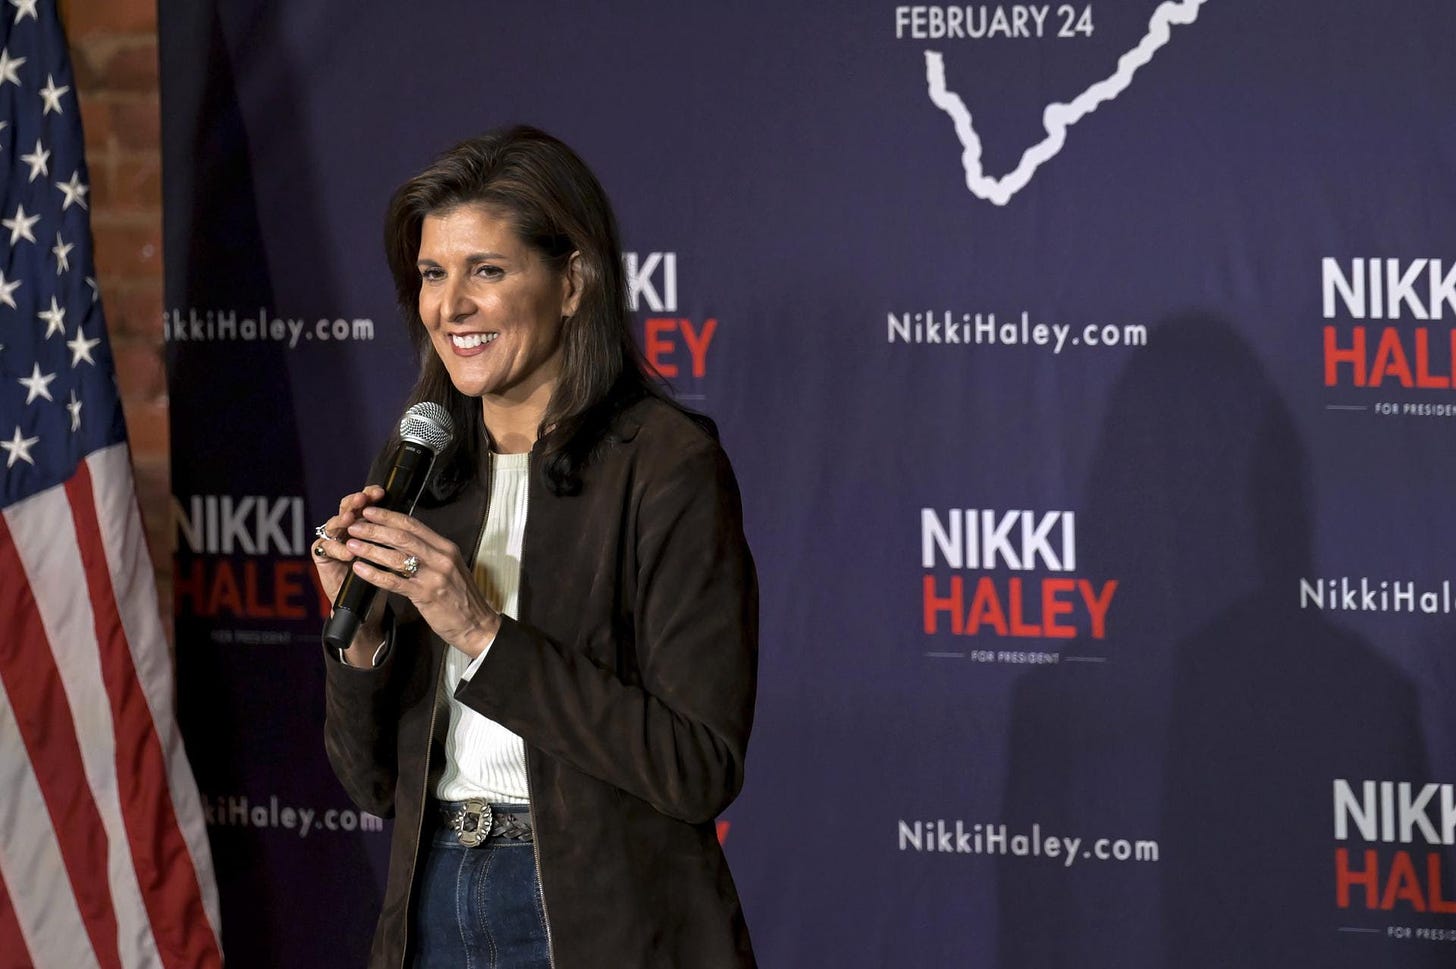 Nikki Haley speaks in South Carolina.